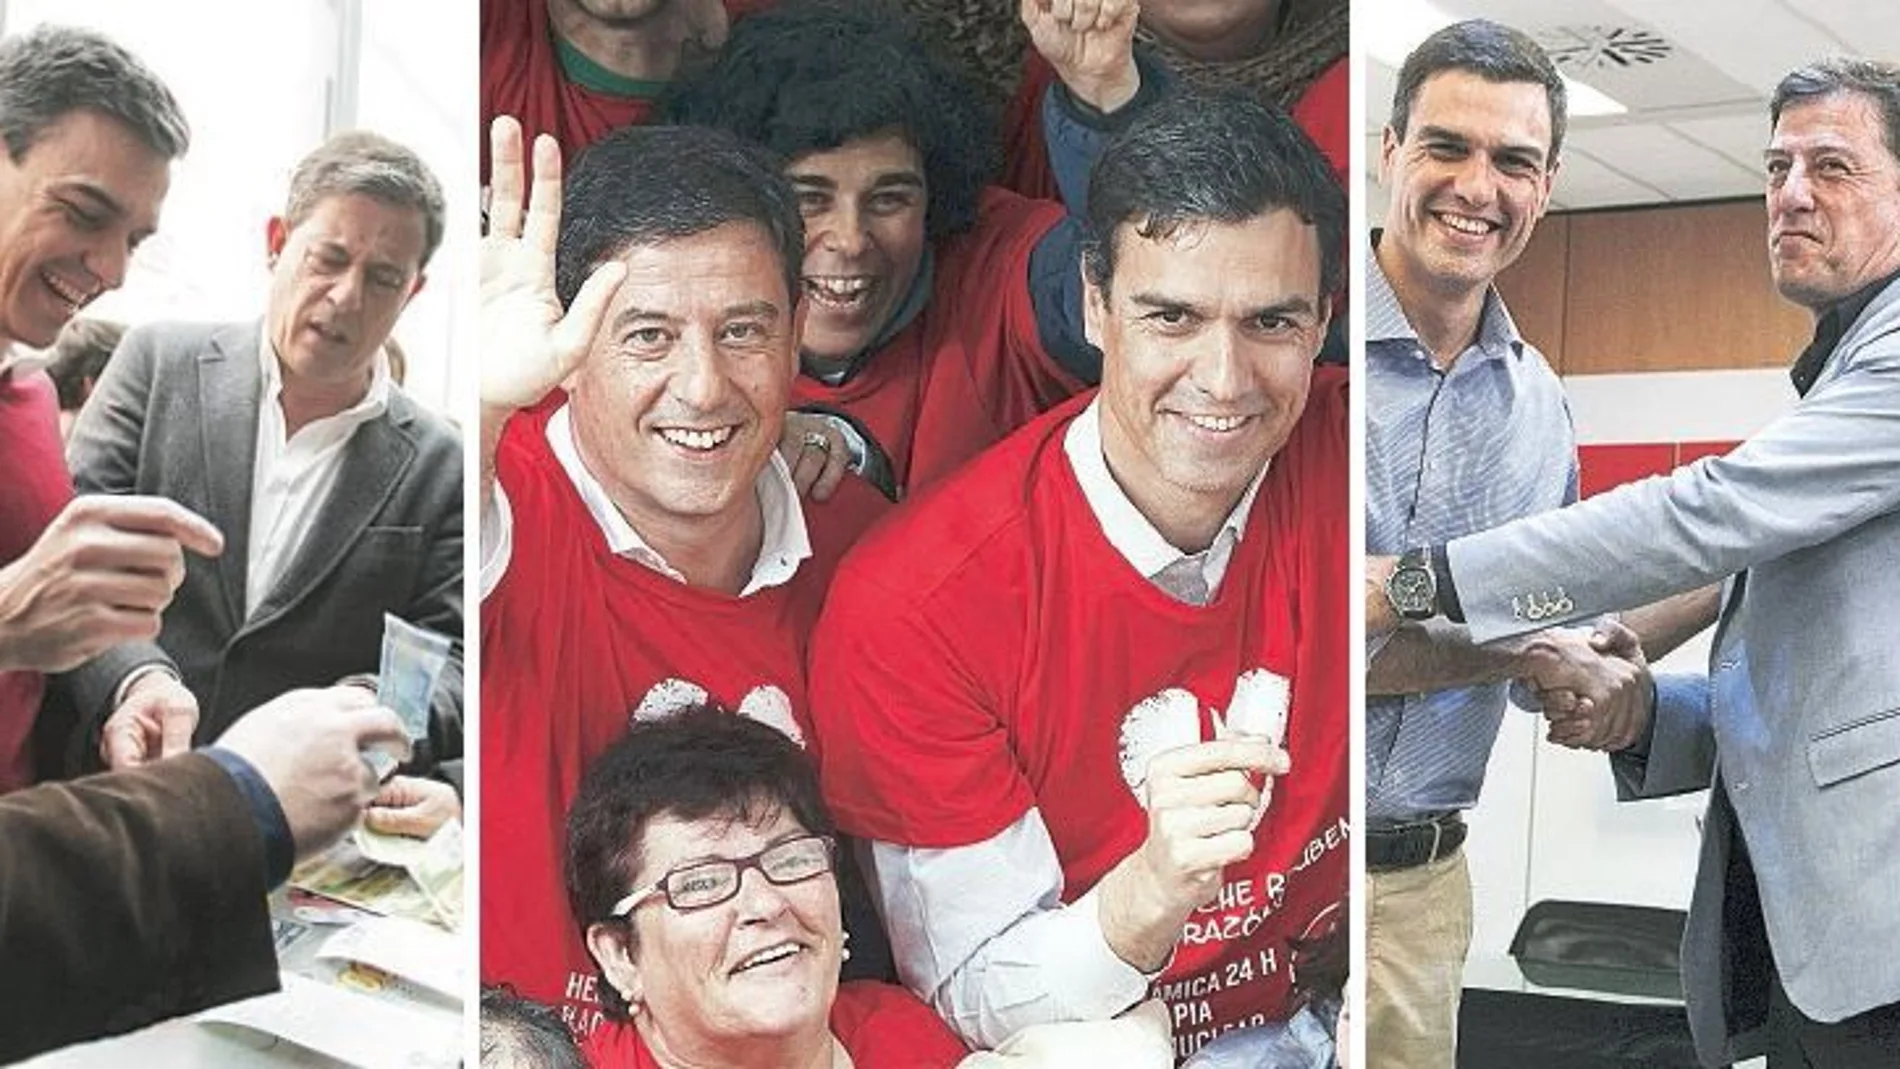 Con la bendición de Sánchez. El líder del PSOE se negó ayer a retirar la confianza en su «amigo» Besteiro pese a los graves delitos que se le imputan